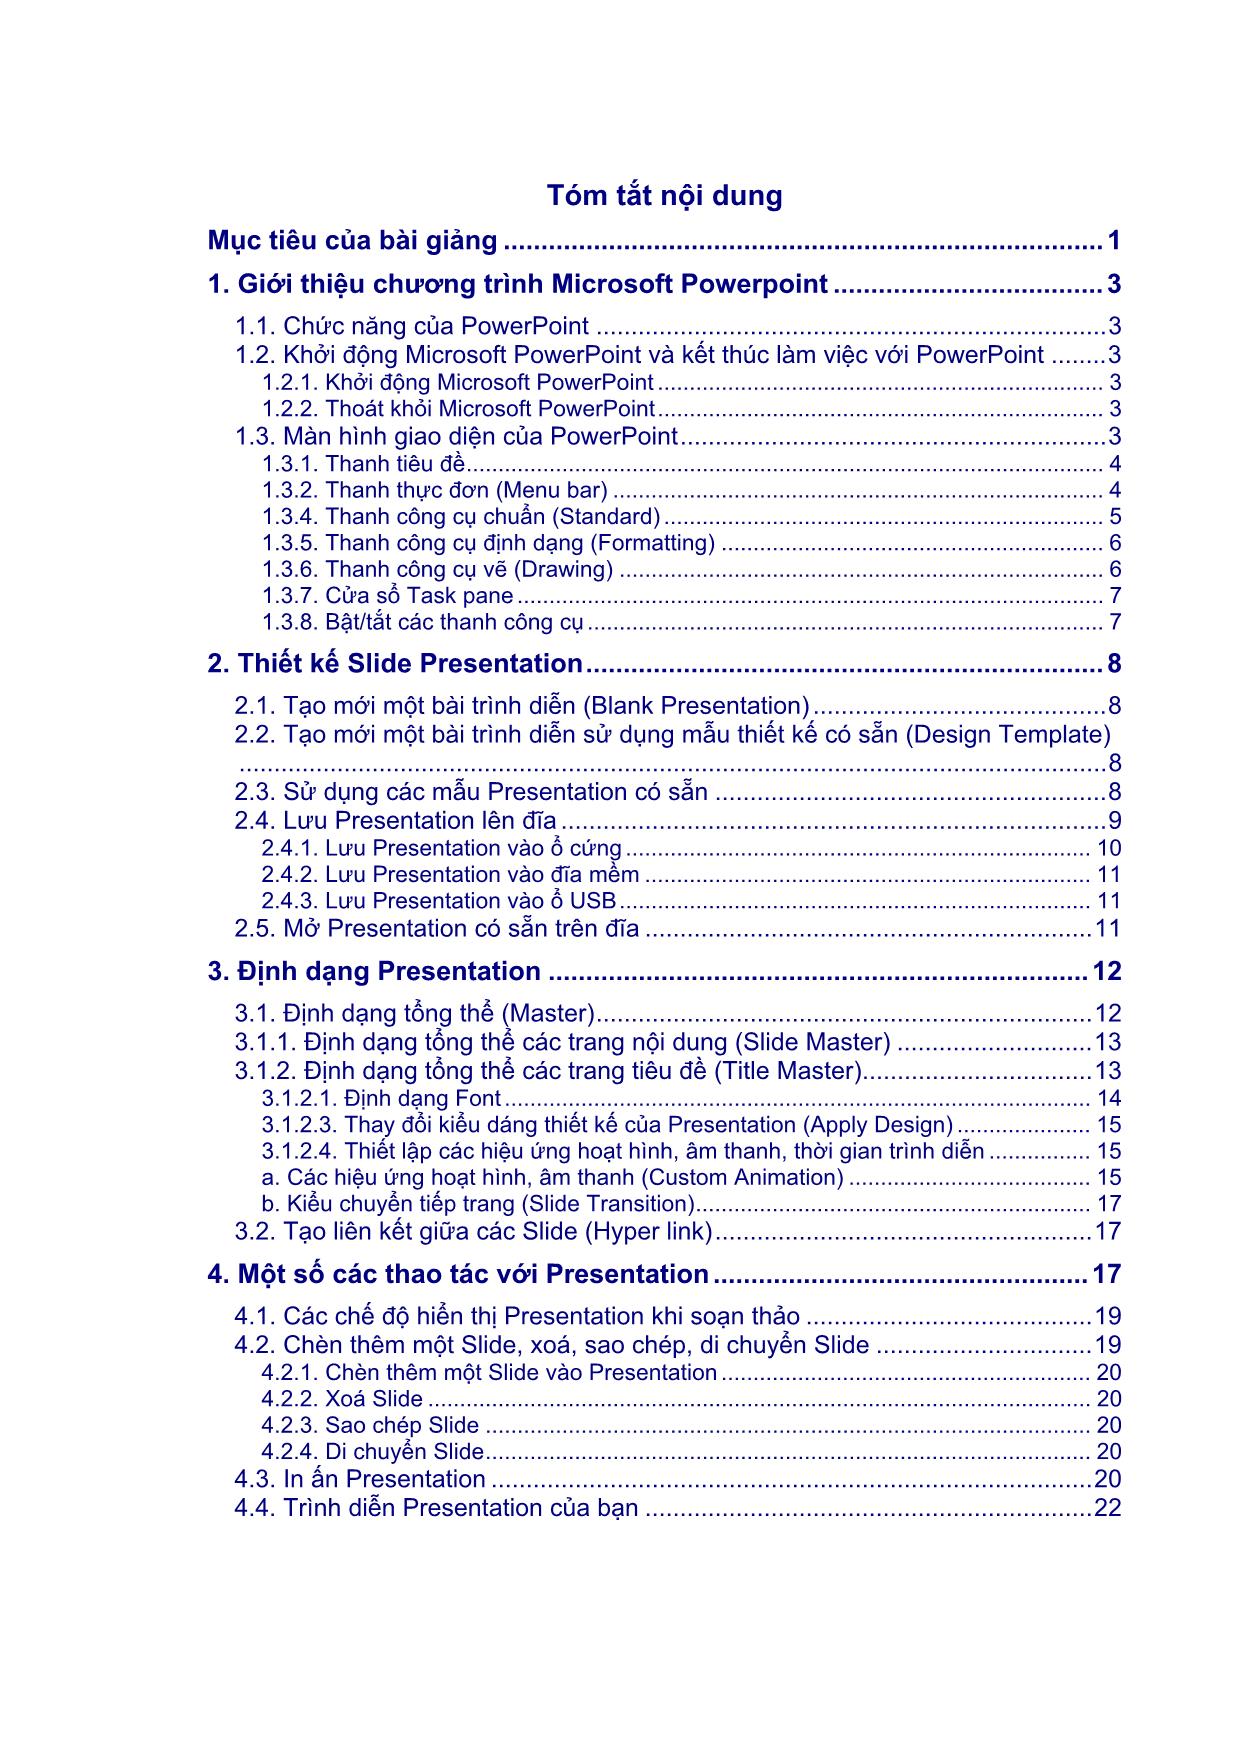 Hướng dẫn sử dụng Micrpsoft Powerpoint XP trang 2